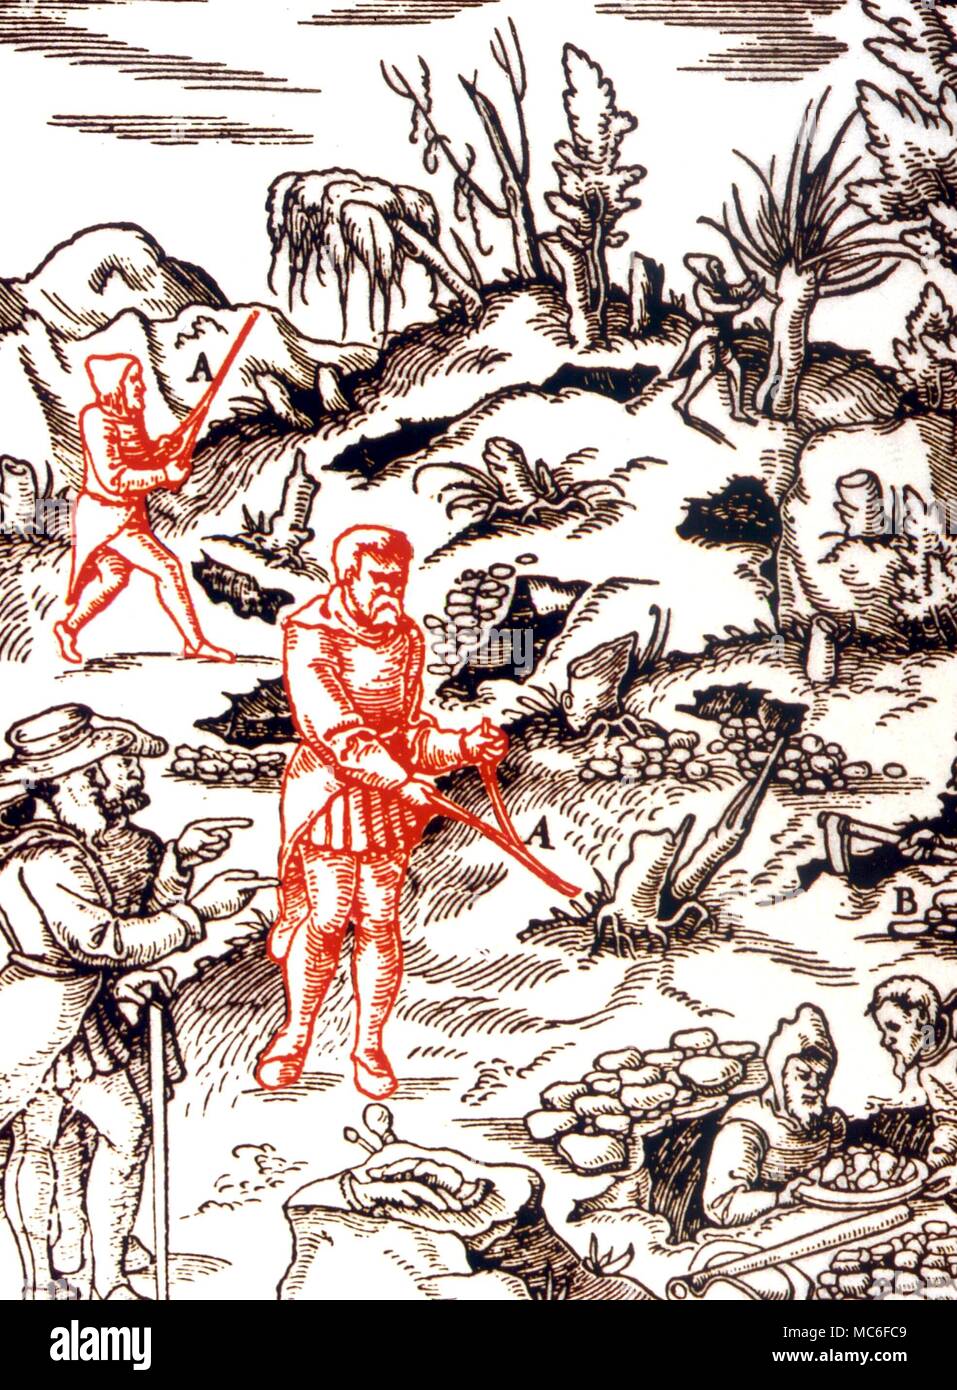 Wünschelrute Wasser divining (Rhabdomancy) Abbildung: water divining, oder der Erforschung für den Bergbau durch die wünschelruten. Von Georg Agricola de Re Metallica, 1571 Stockfoto